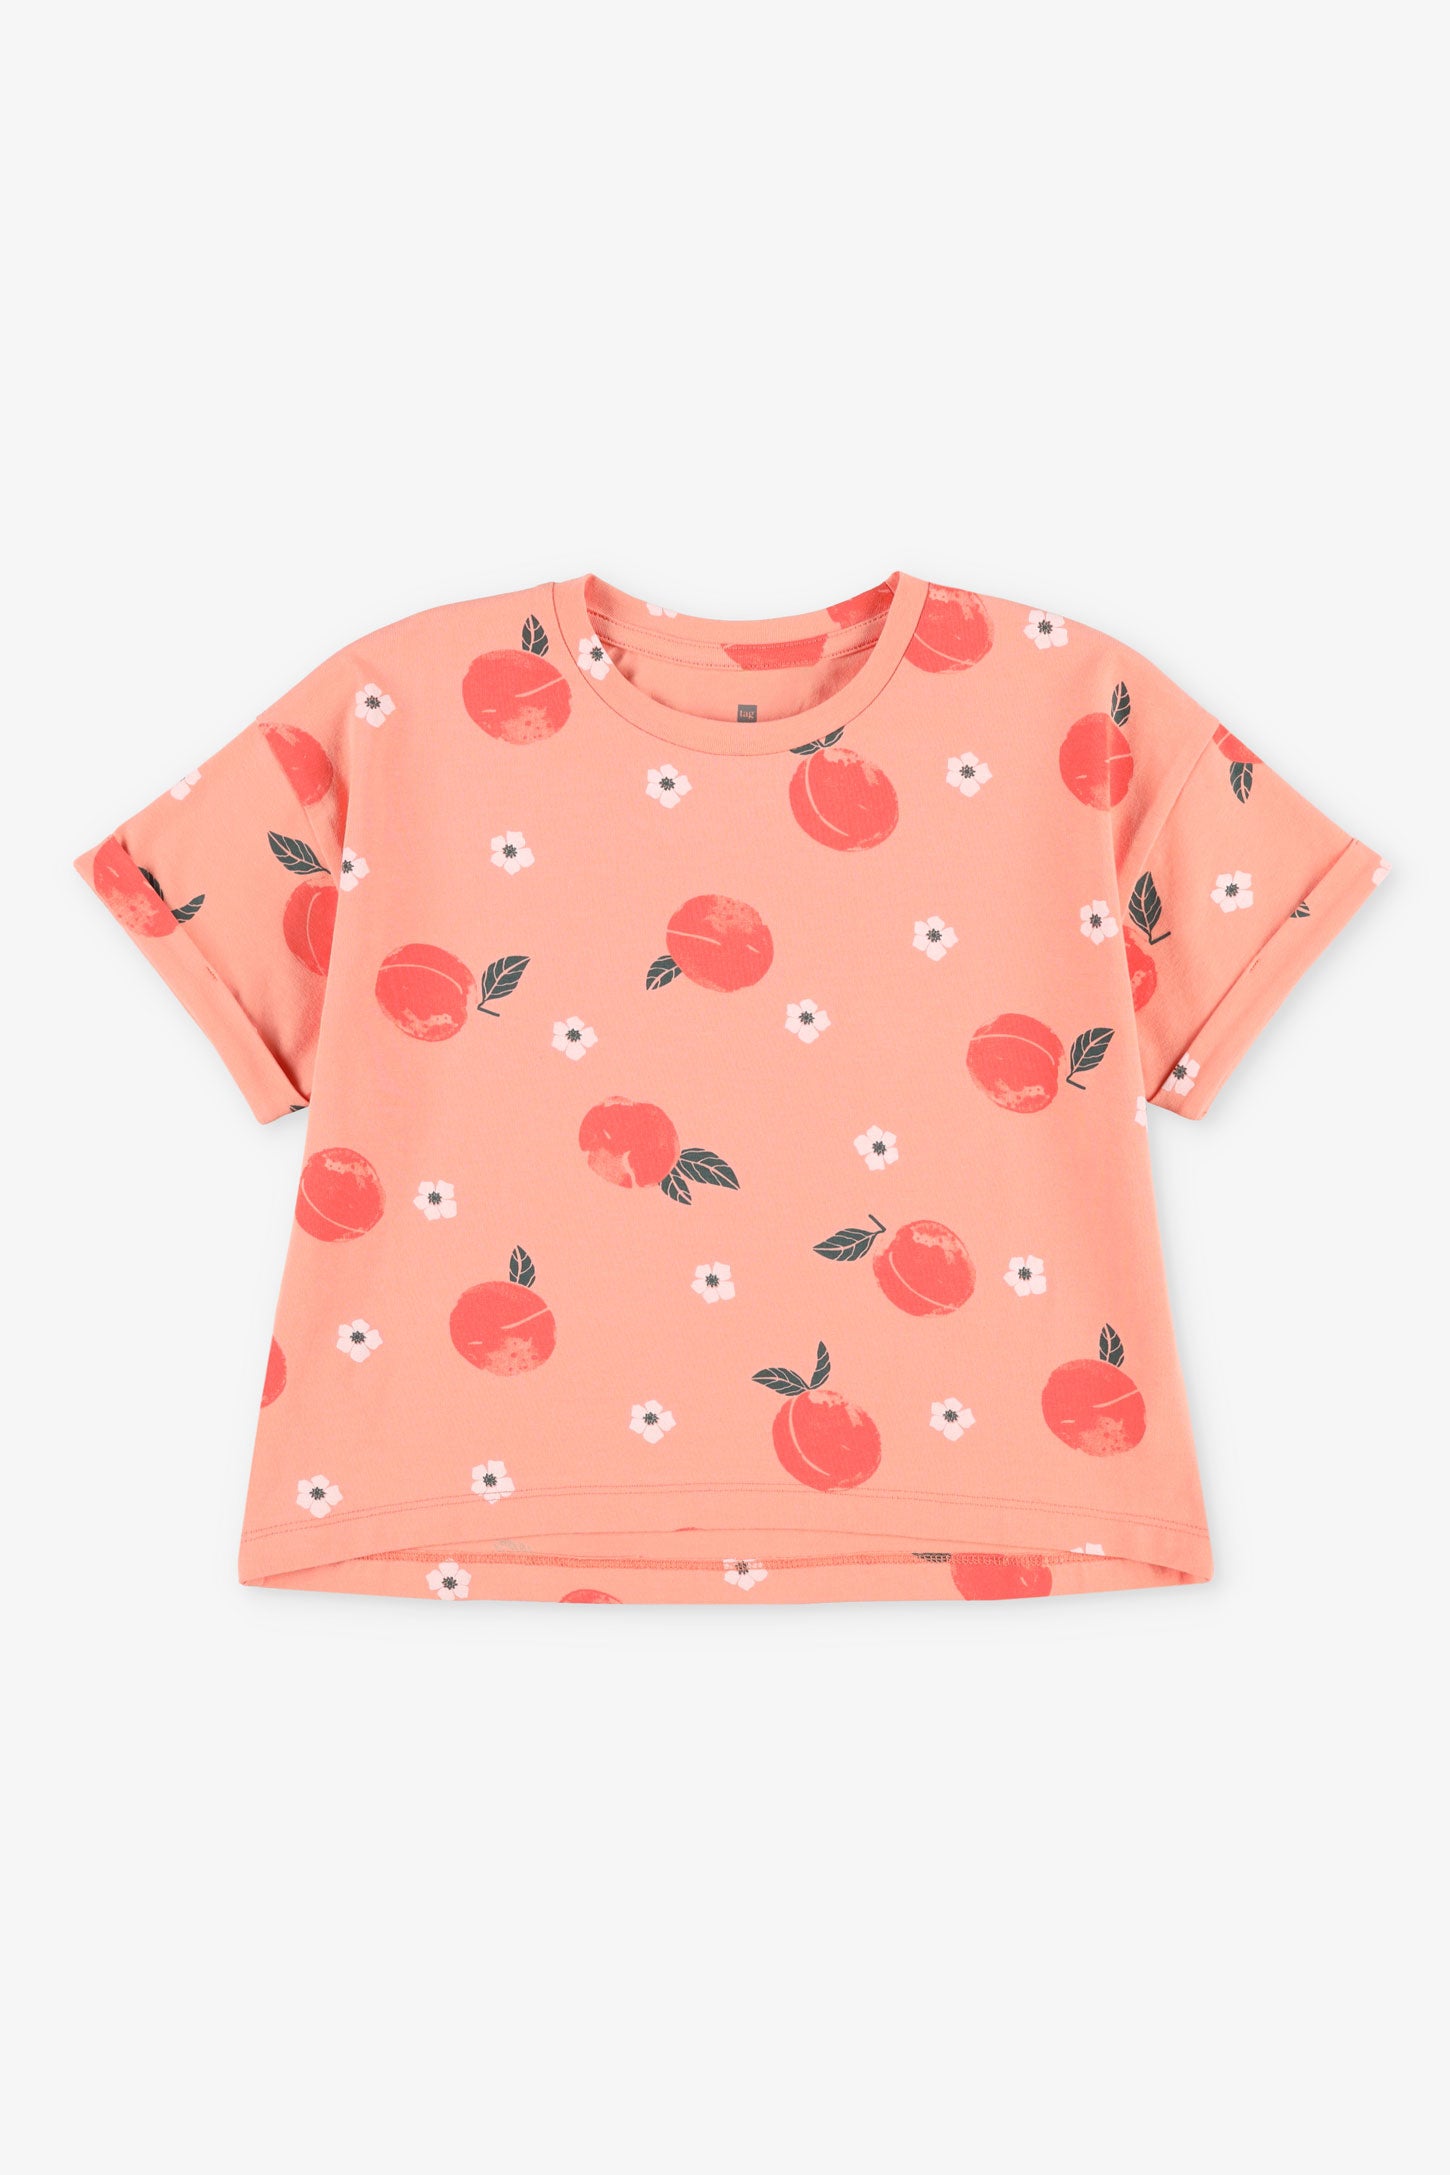 Duos futés, T-shirt surdimensionné, 2/20$ - Enfant fille && ORANGE MULTI